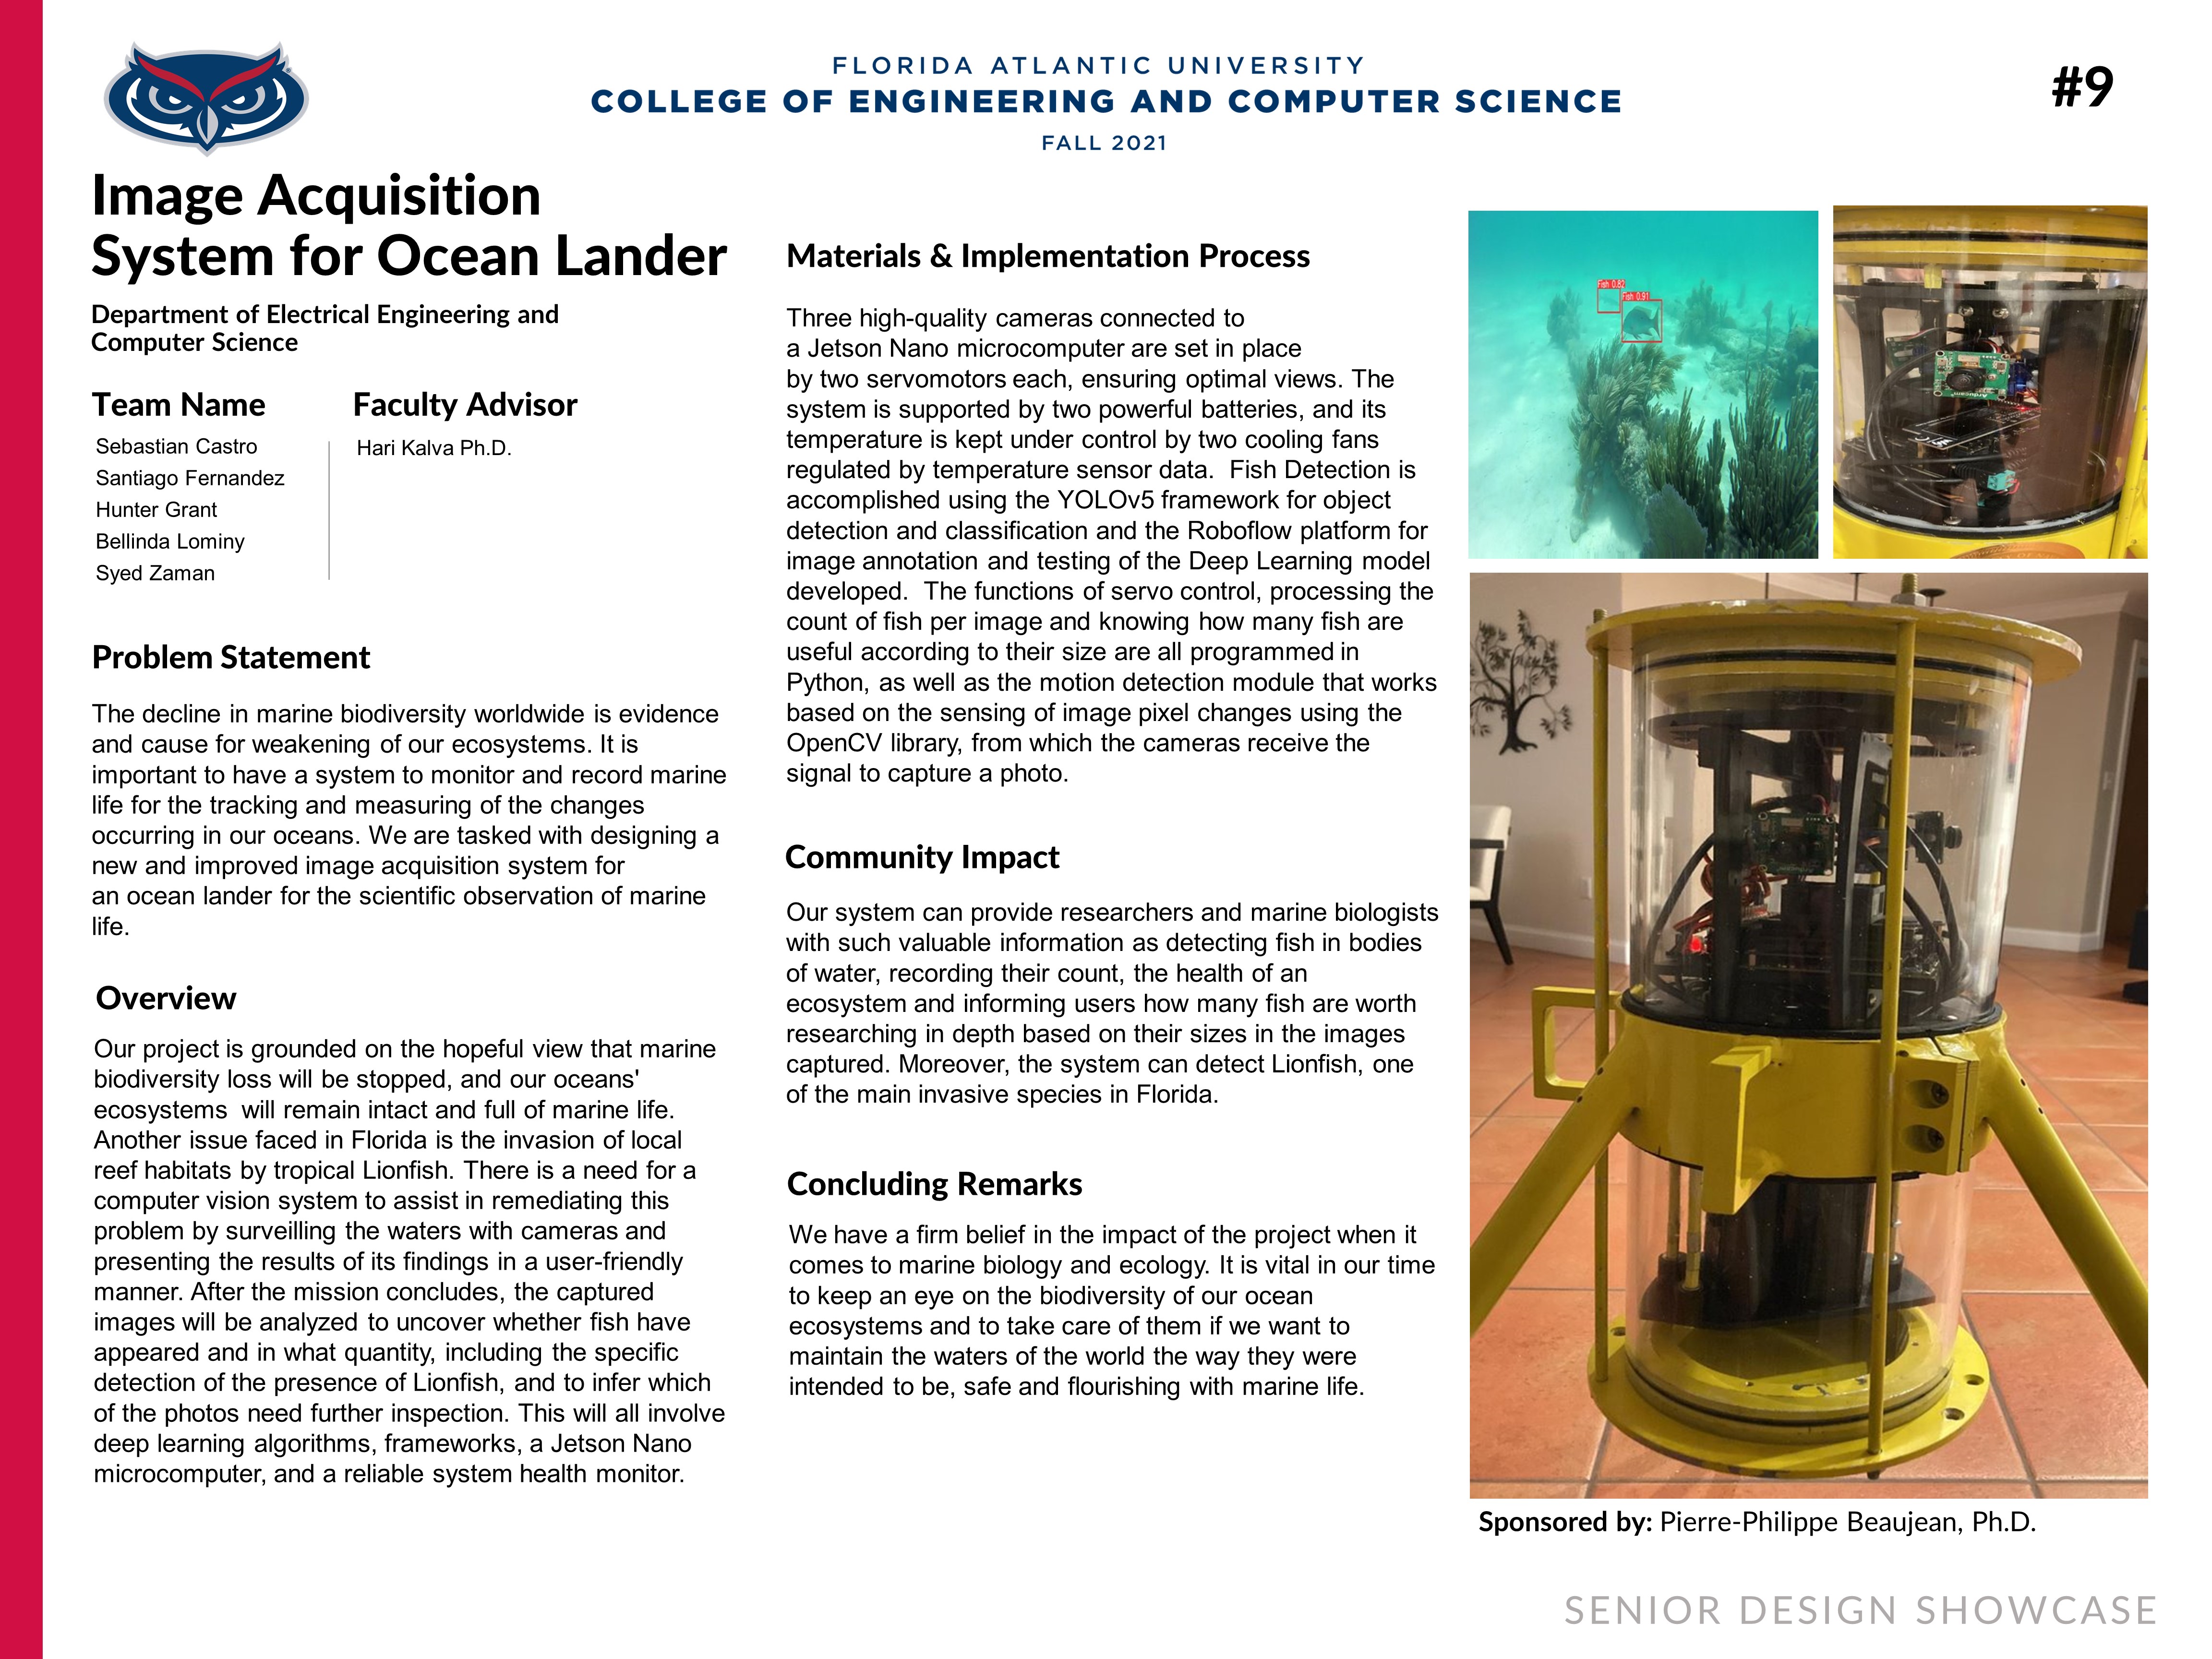 Image Acquisition System for Ocean Lander